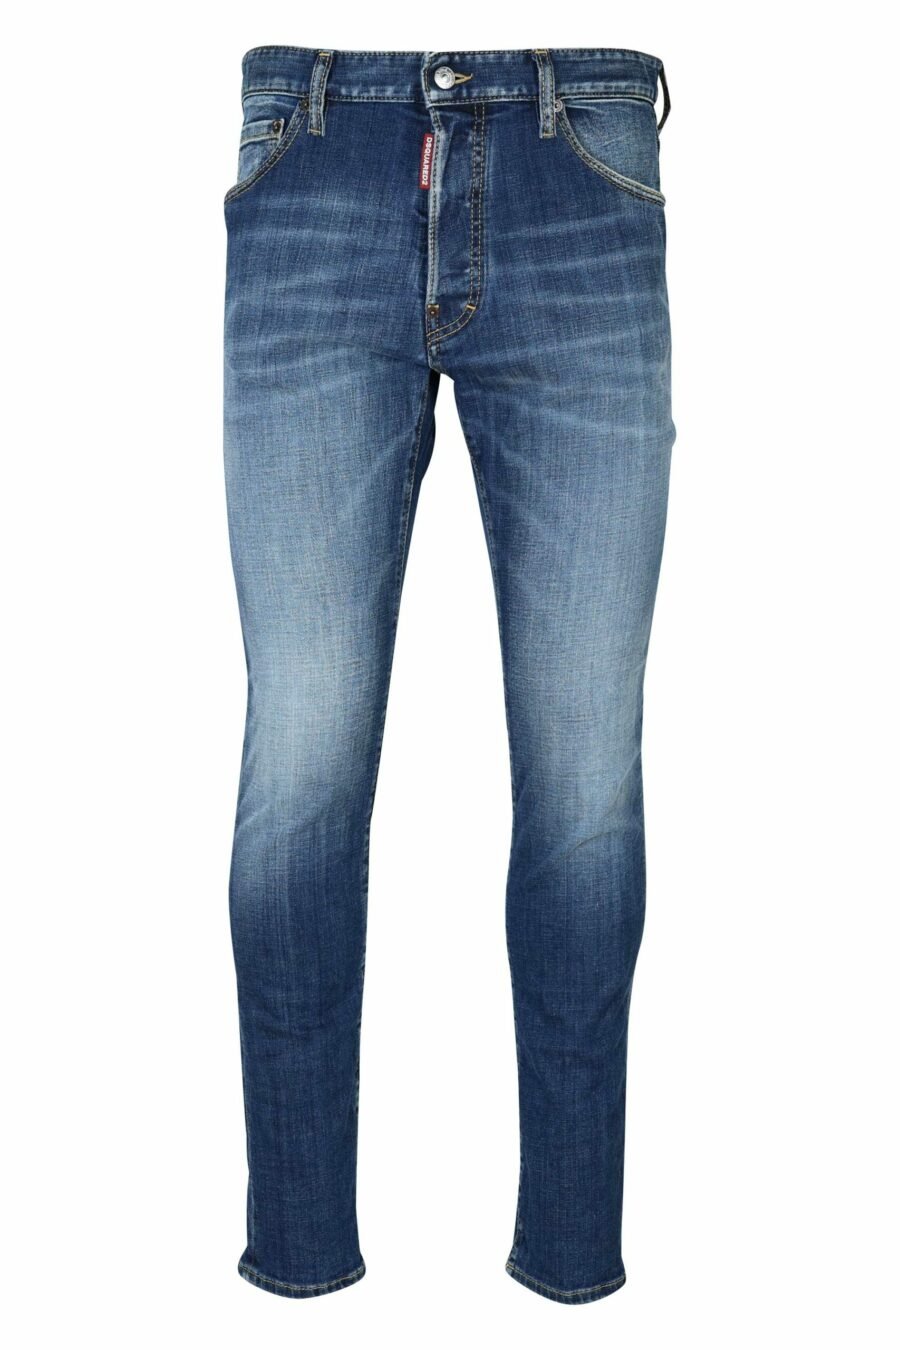 Pantalon bleu en denim semi-transparent "cool guy jean" - 8054148476557